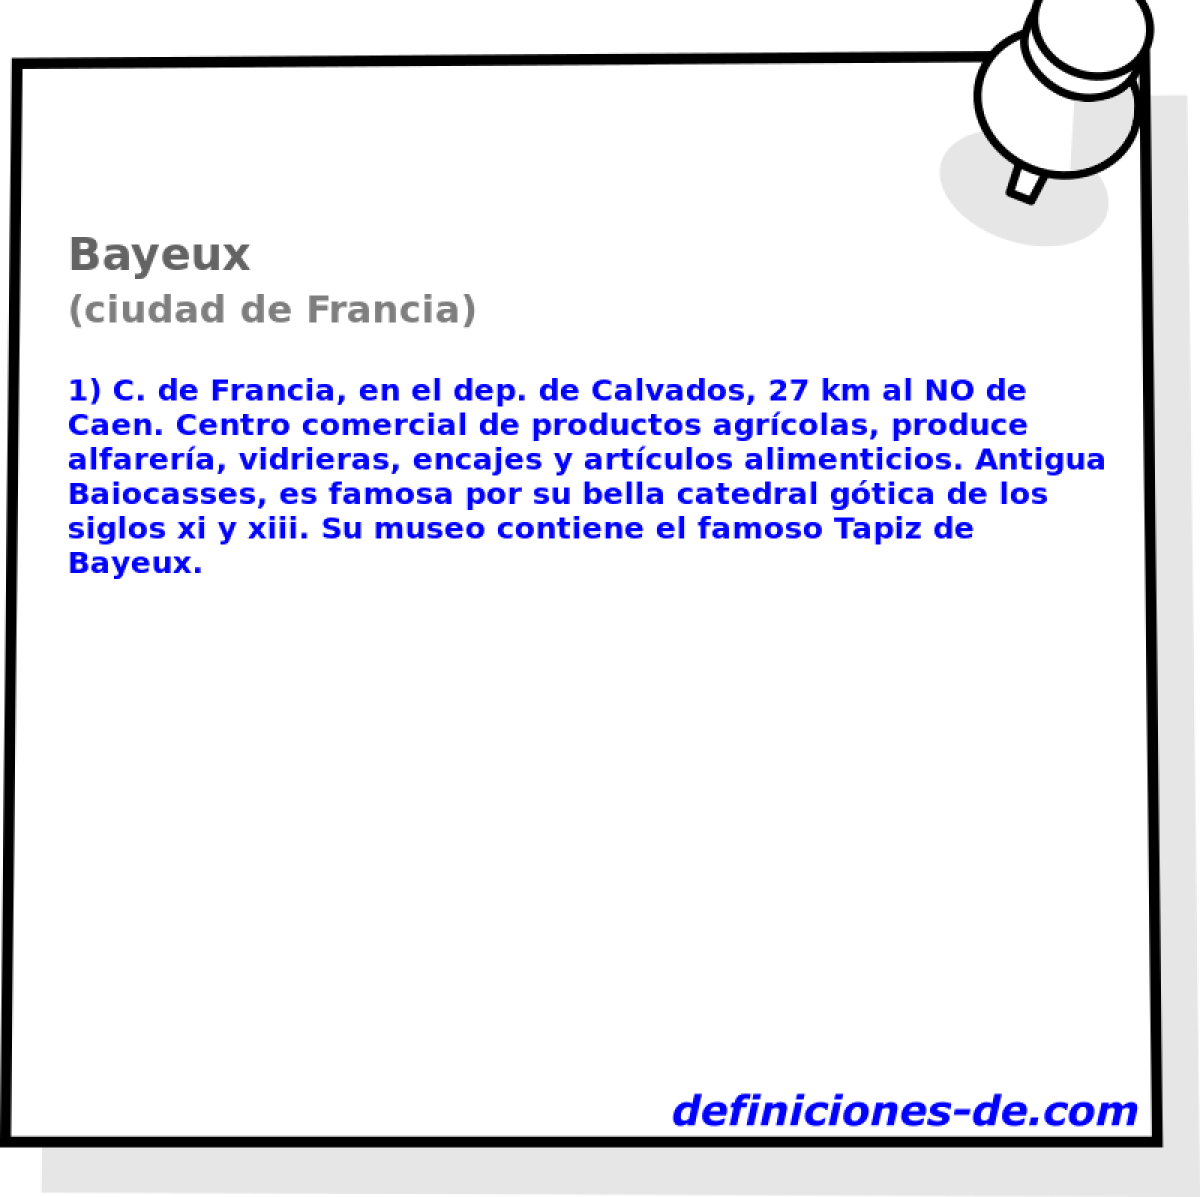 Bayeux (ciudad de Francia)